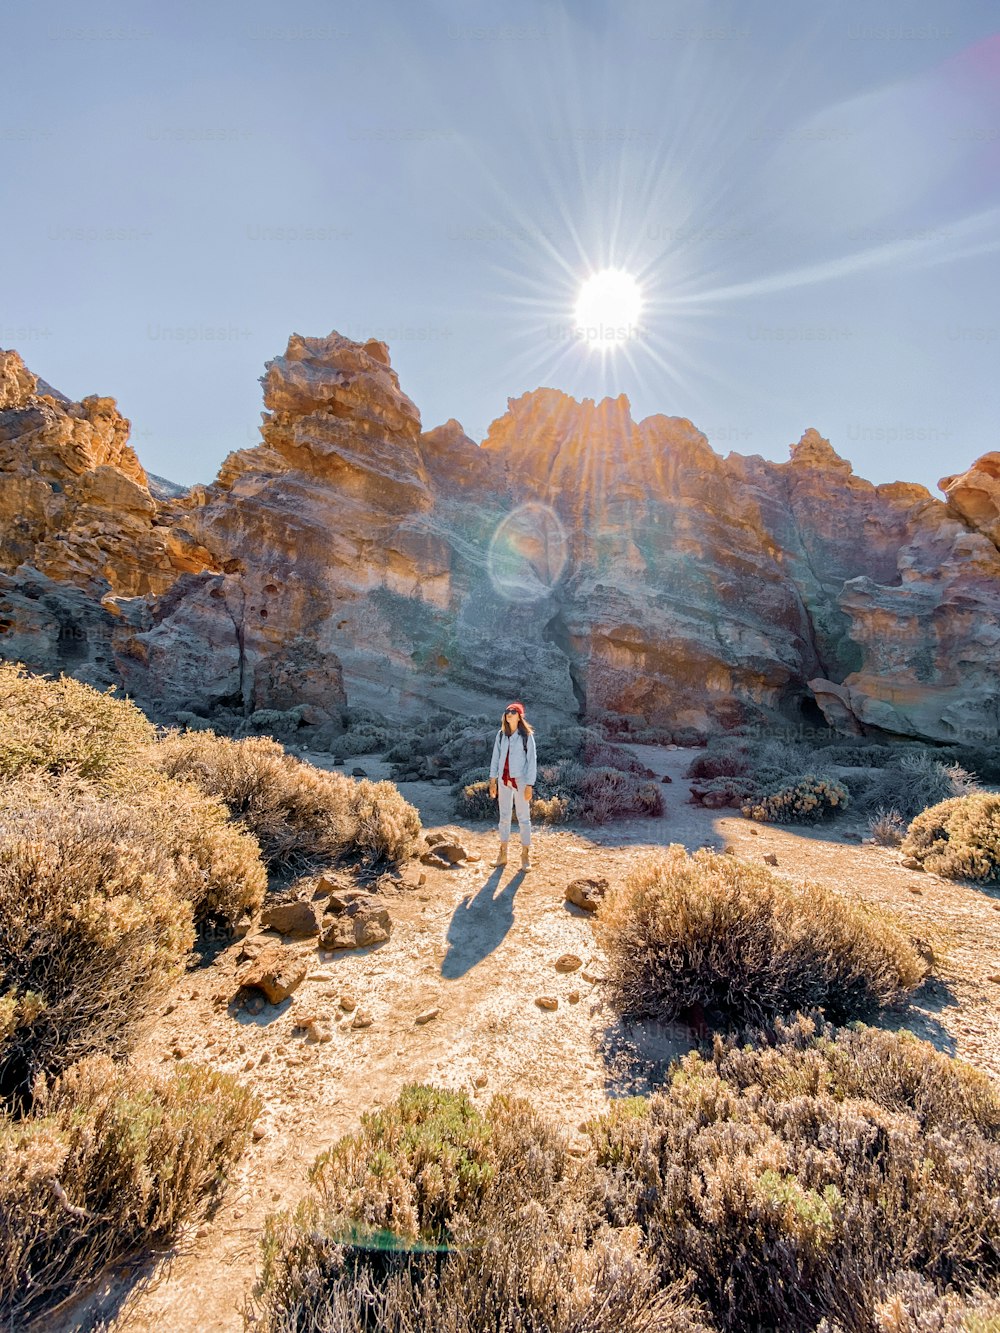 Paisaje de hermosas rocas en el valle del desierto con mujer viajando. Imagen realizada en el teléfono móvil